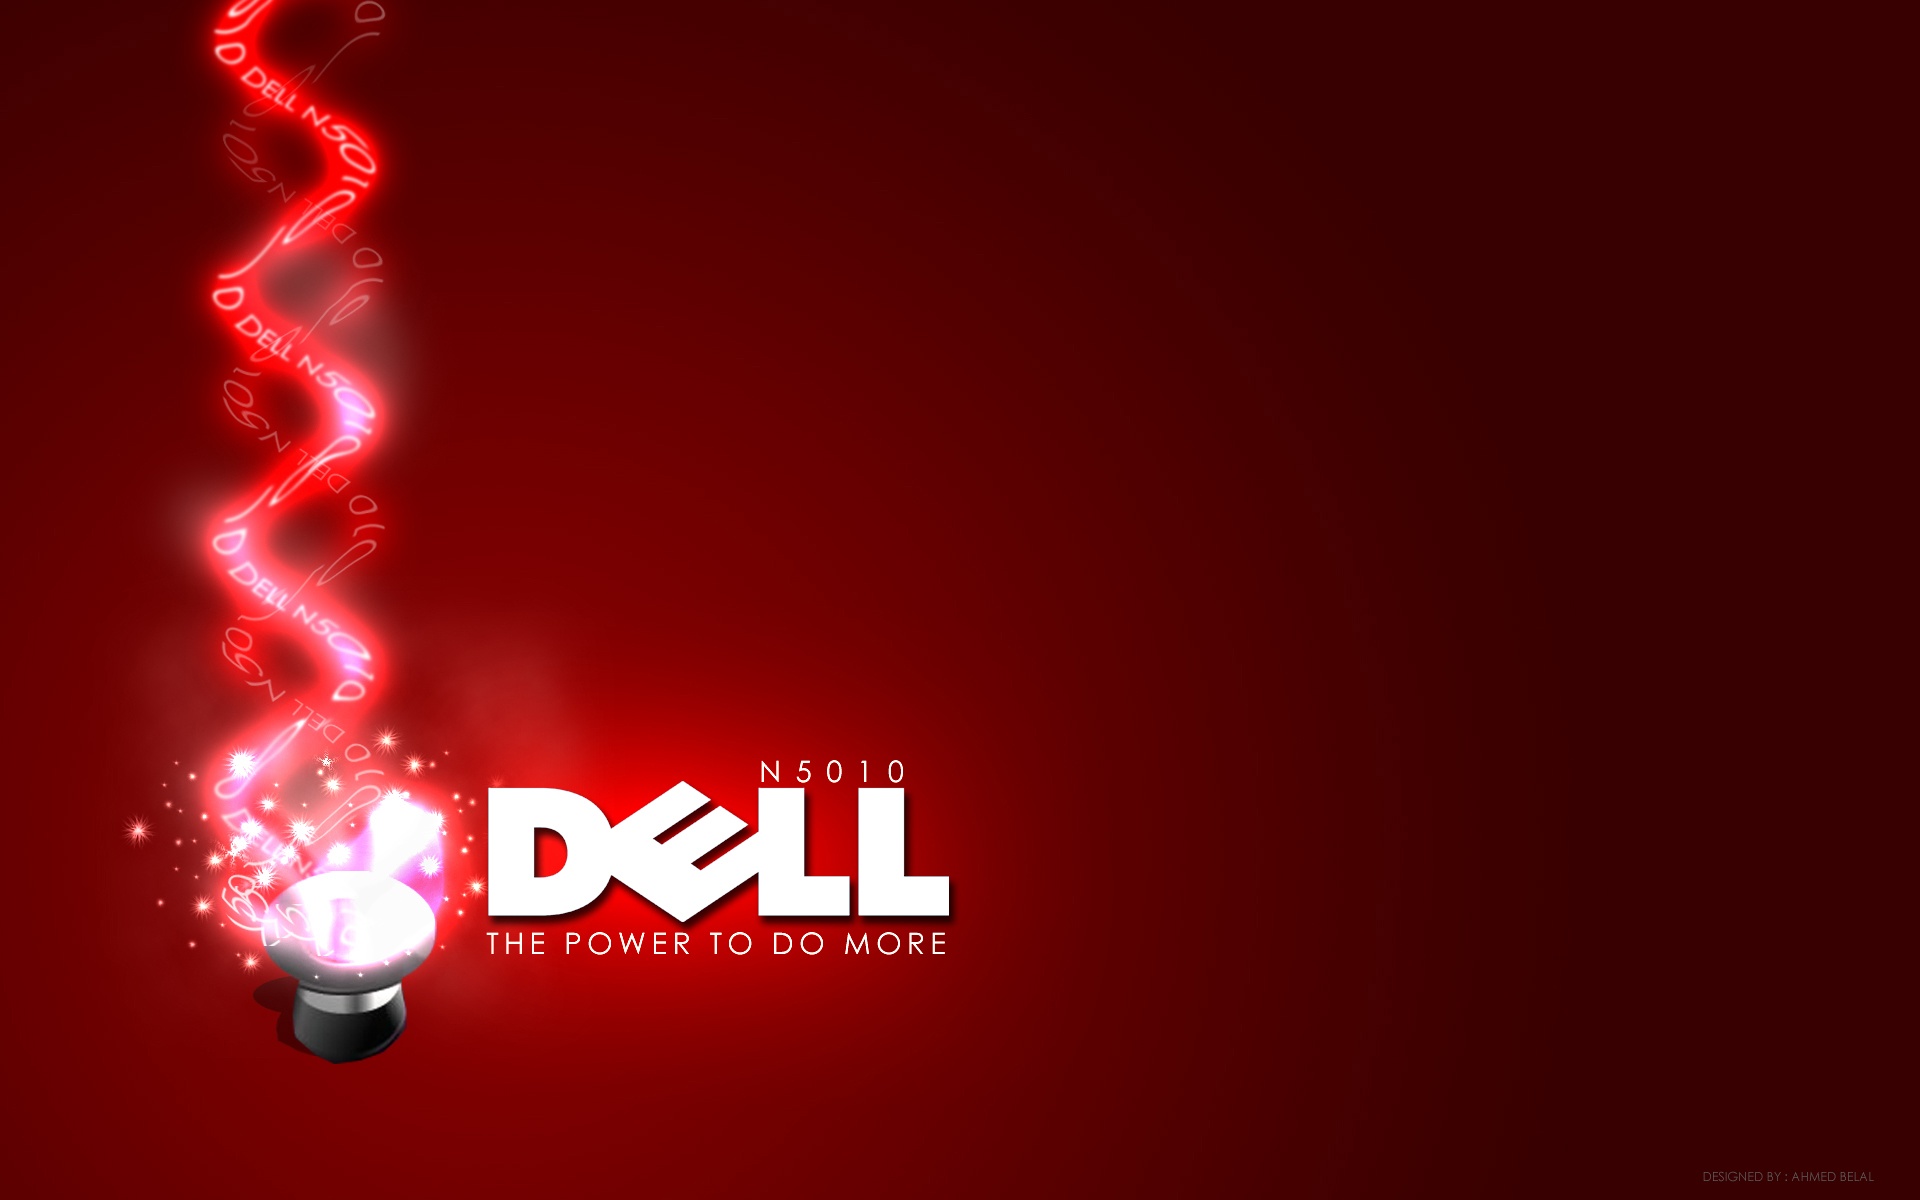 Dell Red Full HD Desktop Wallpaper 1080p